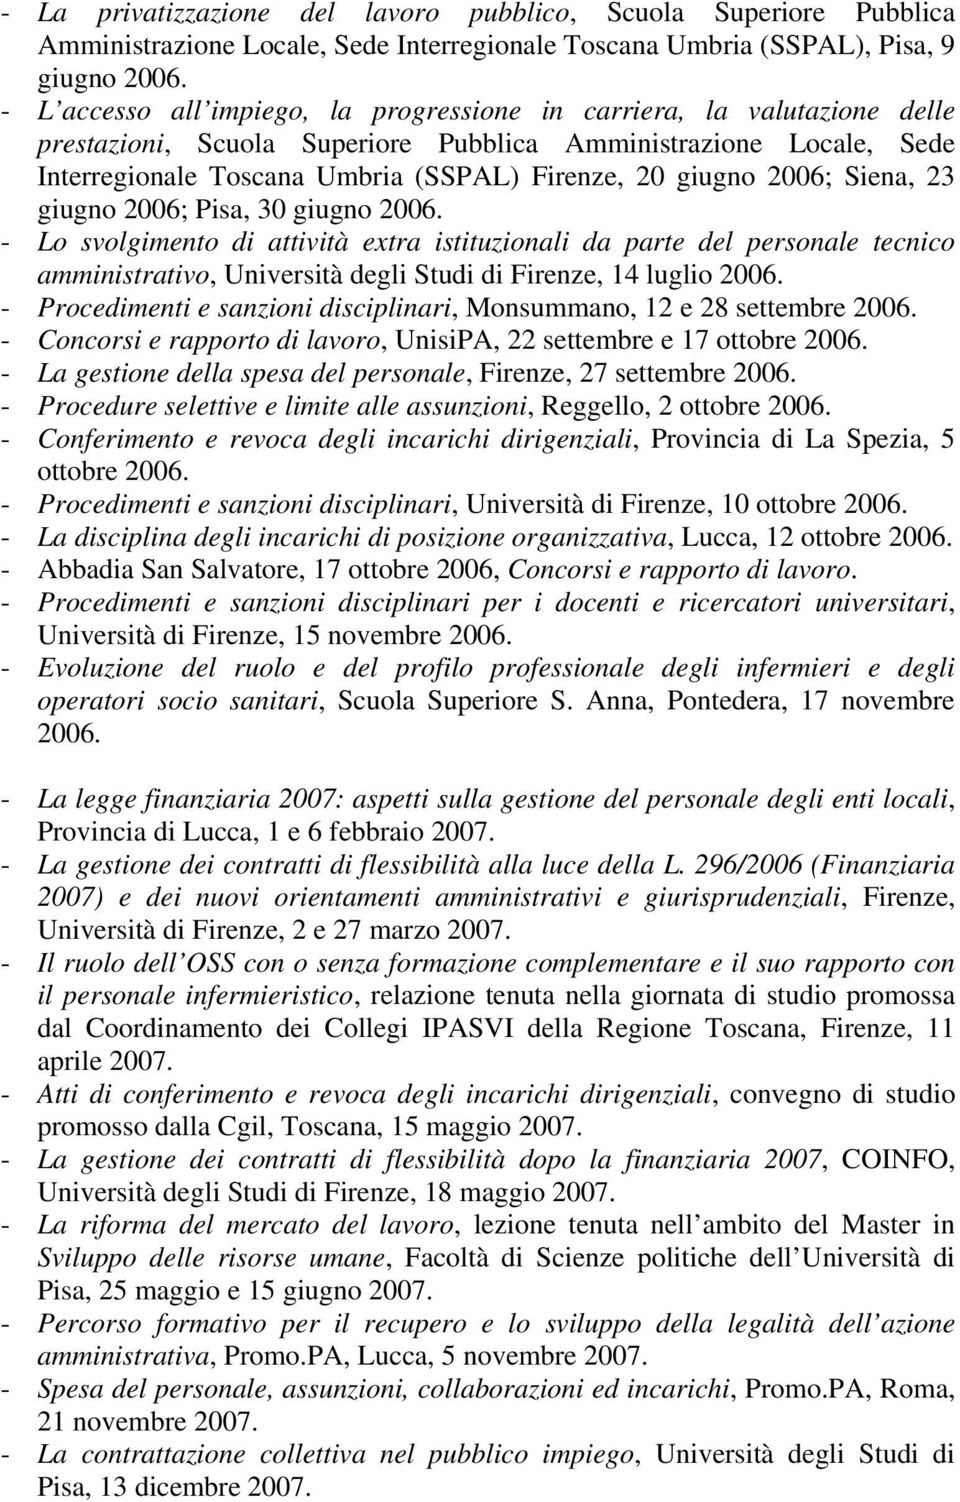 2006; Siena, 23 giugno 2006; Pisa, 30 giugno 2006. - Lo svolgimento di attività extra istituzionali da parte del personale tecnico amministrativo, Università degli Studi di Firenze, 14 luglio 2006.